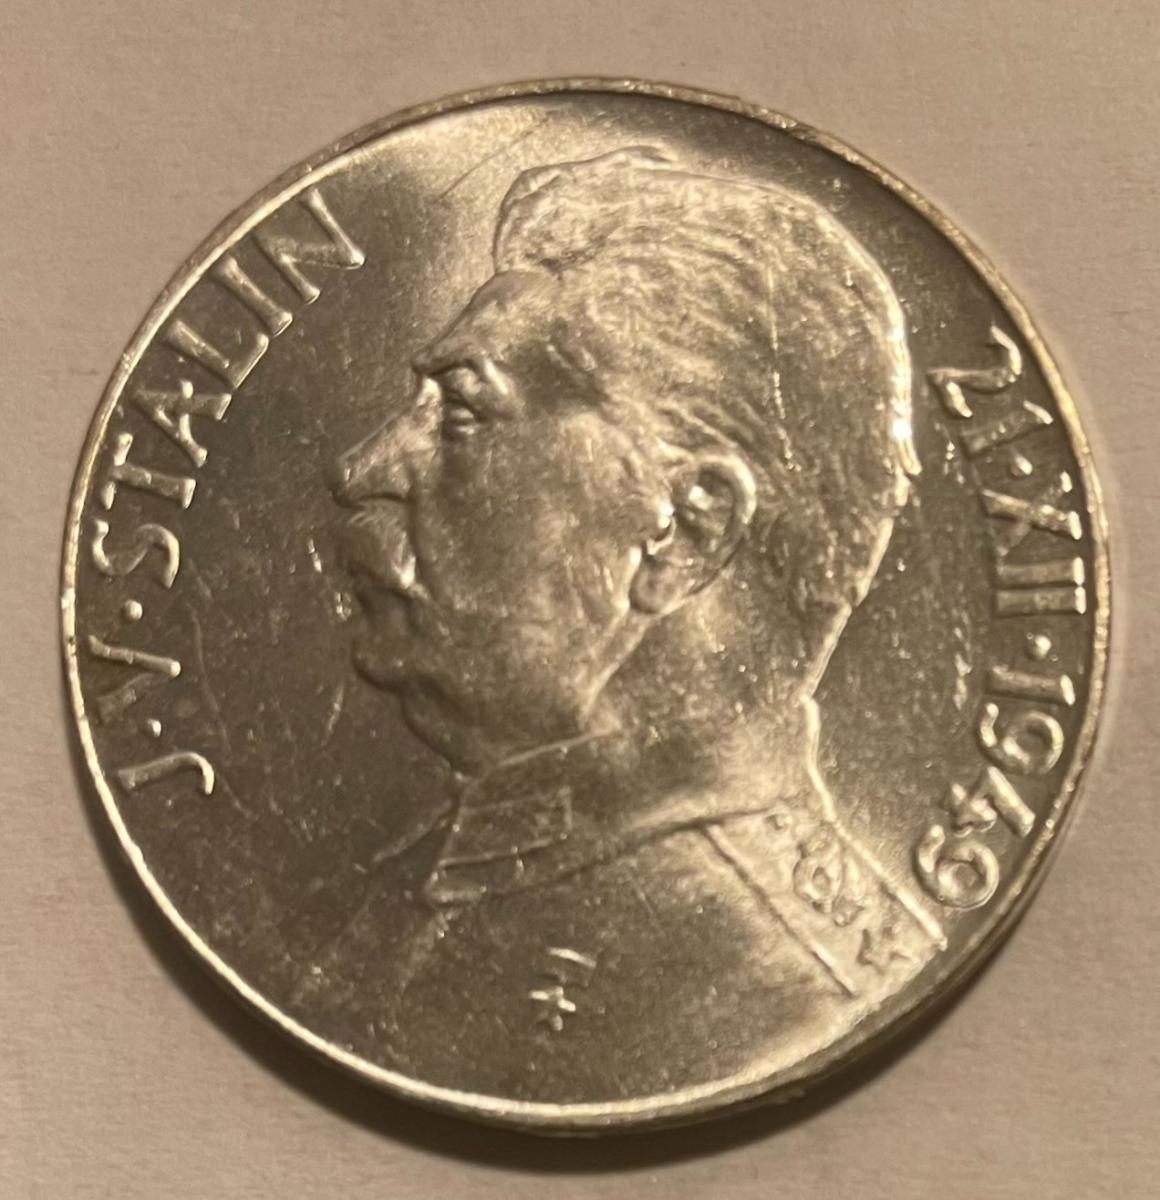 Strieborná pamätná minca 50 Kčs J. V. Stalin 1949 Ag, 10g !ZBIERKOVÁ! - Numizmatika